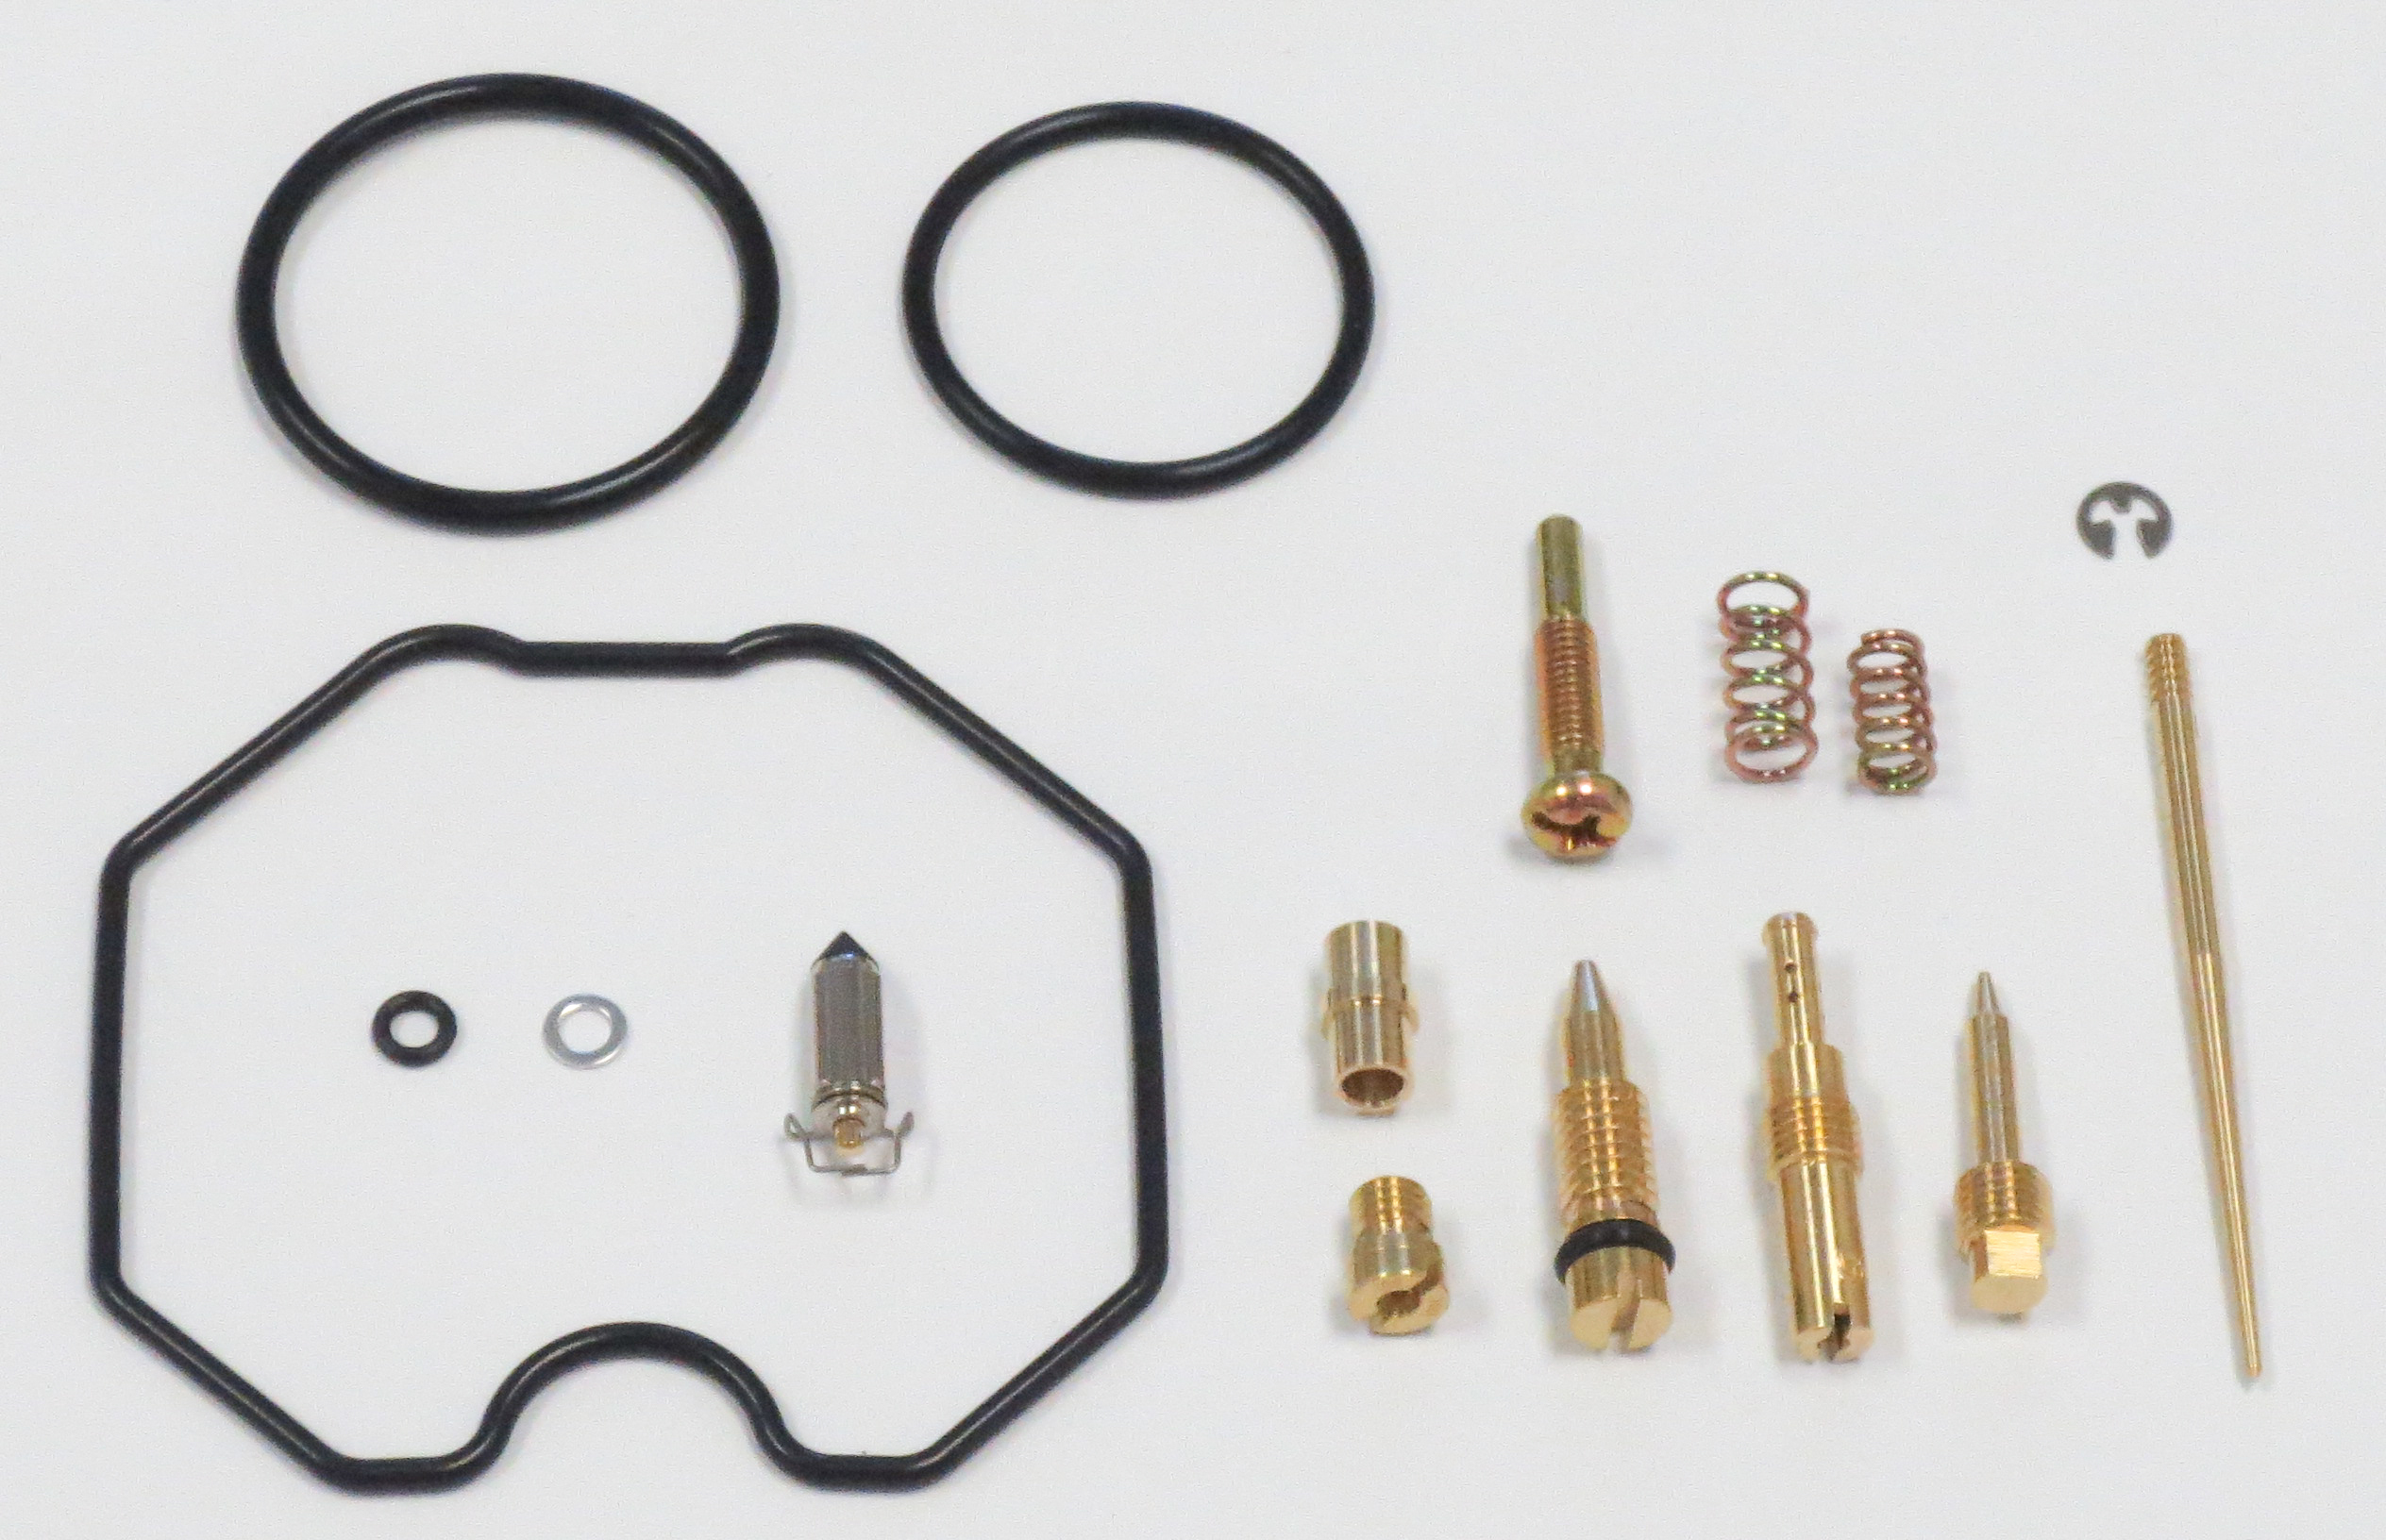 Carburetor Repair Kit - For 09-14 Polaris RZR 170 - Click Image to Close